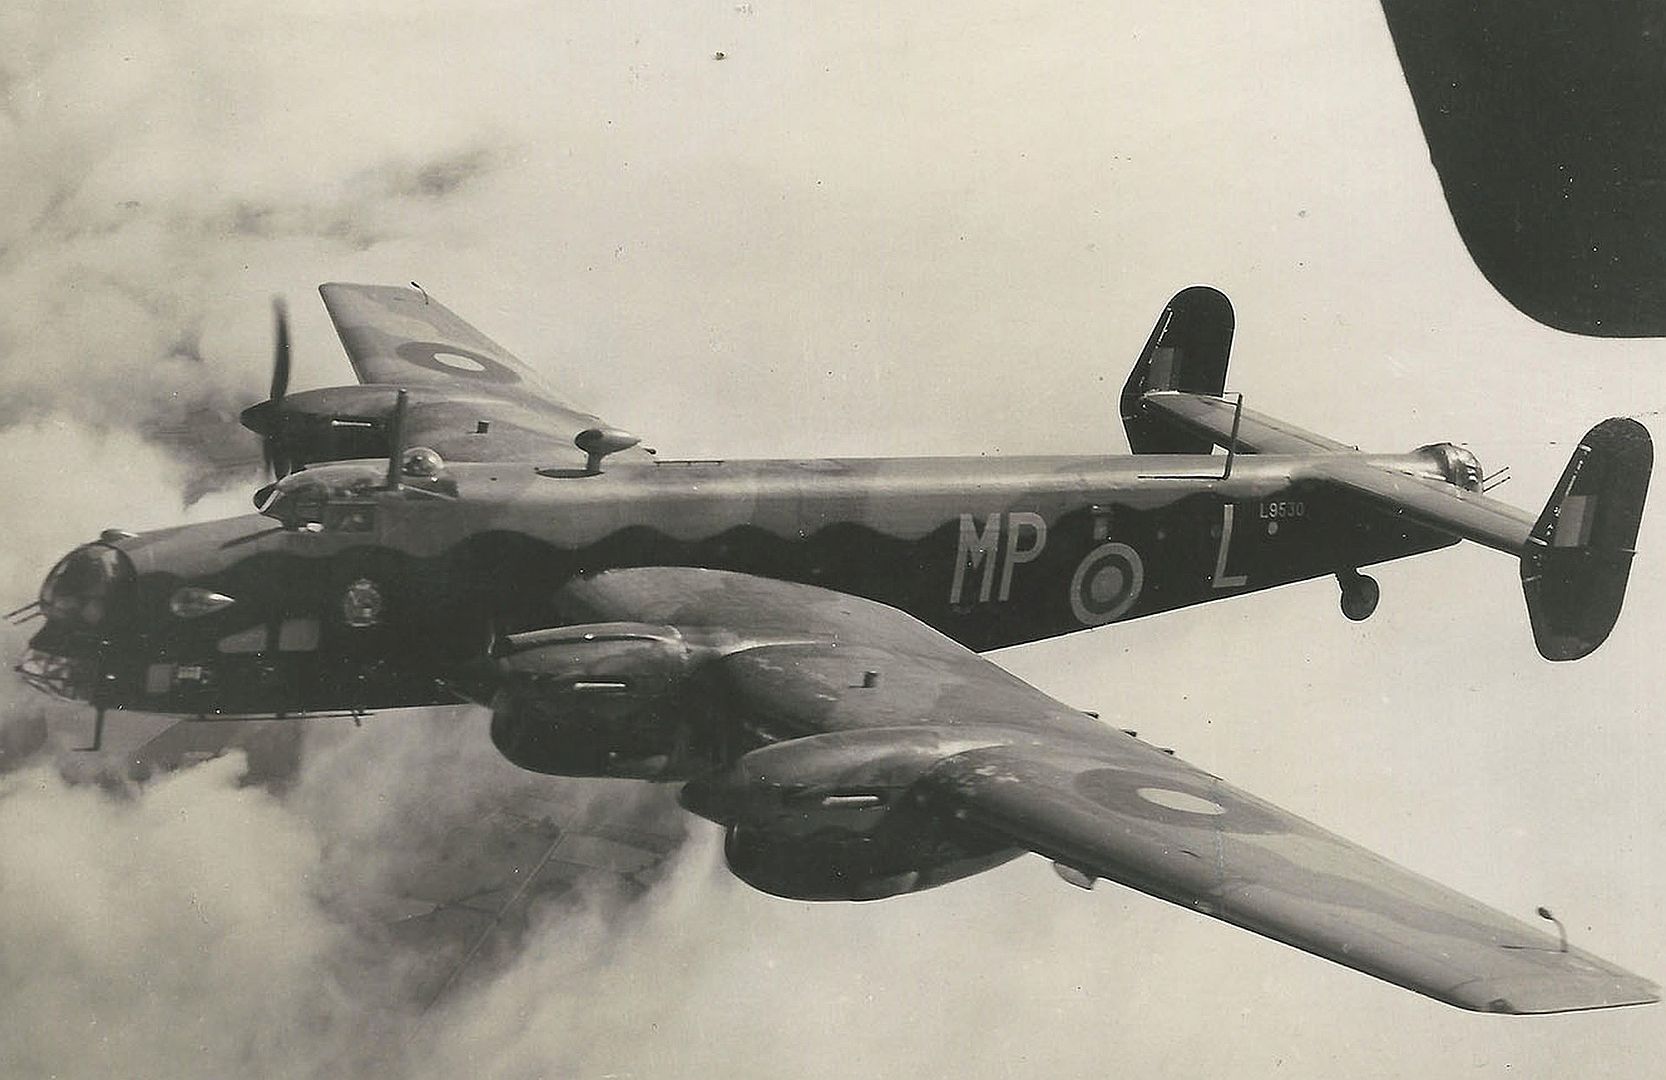  76 Squadron RAF Summer 1941